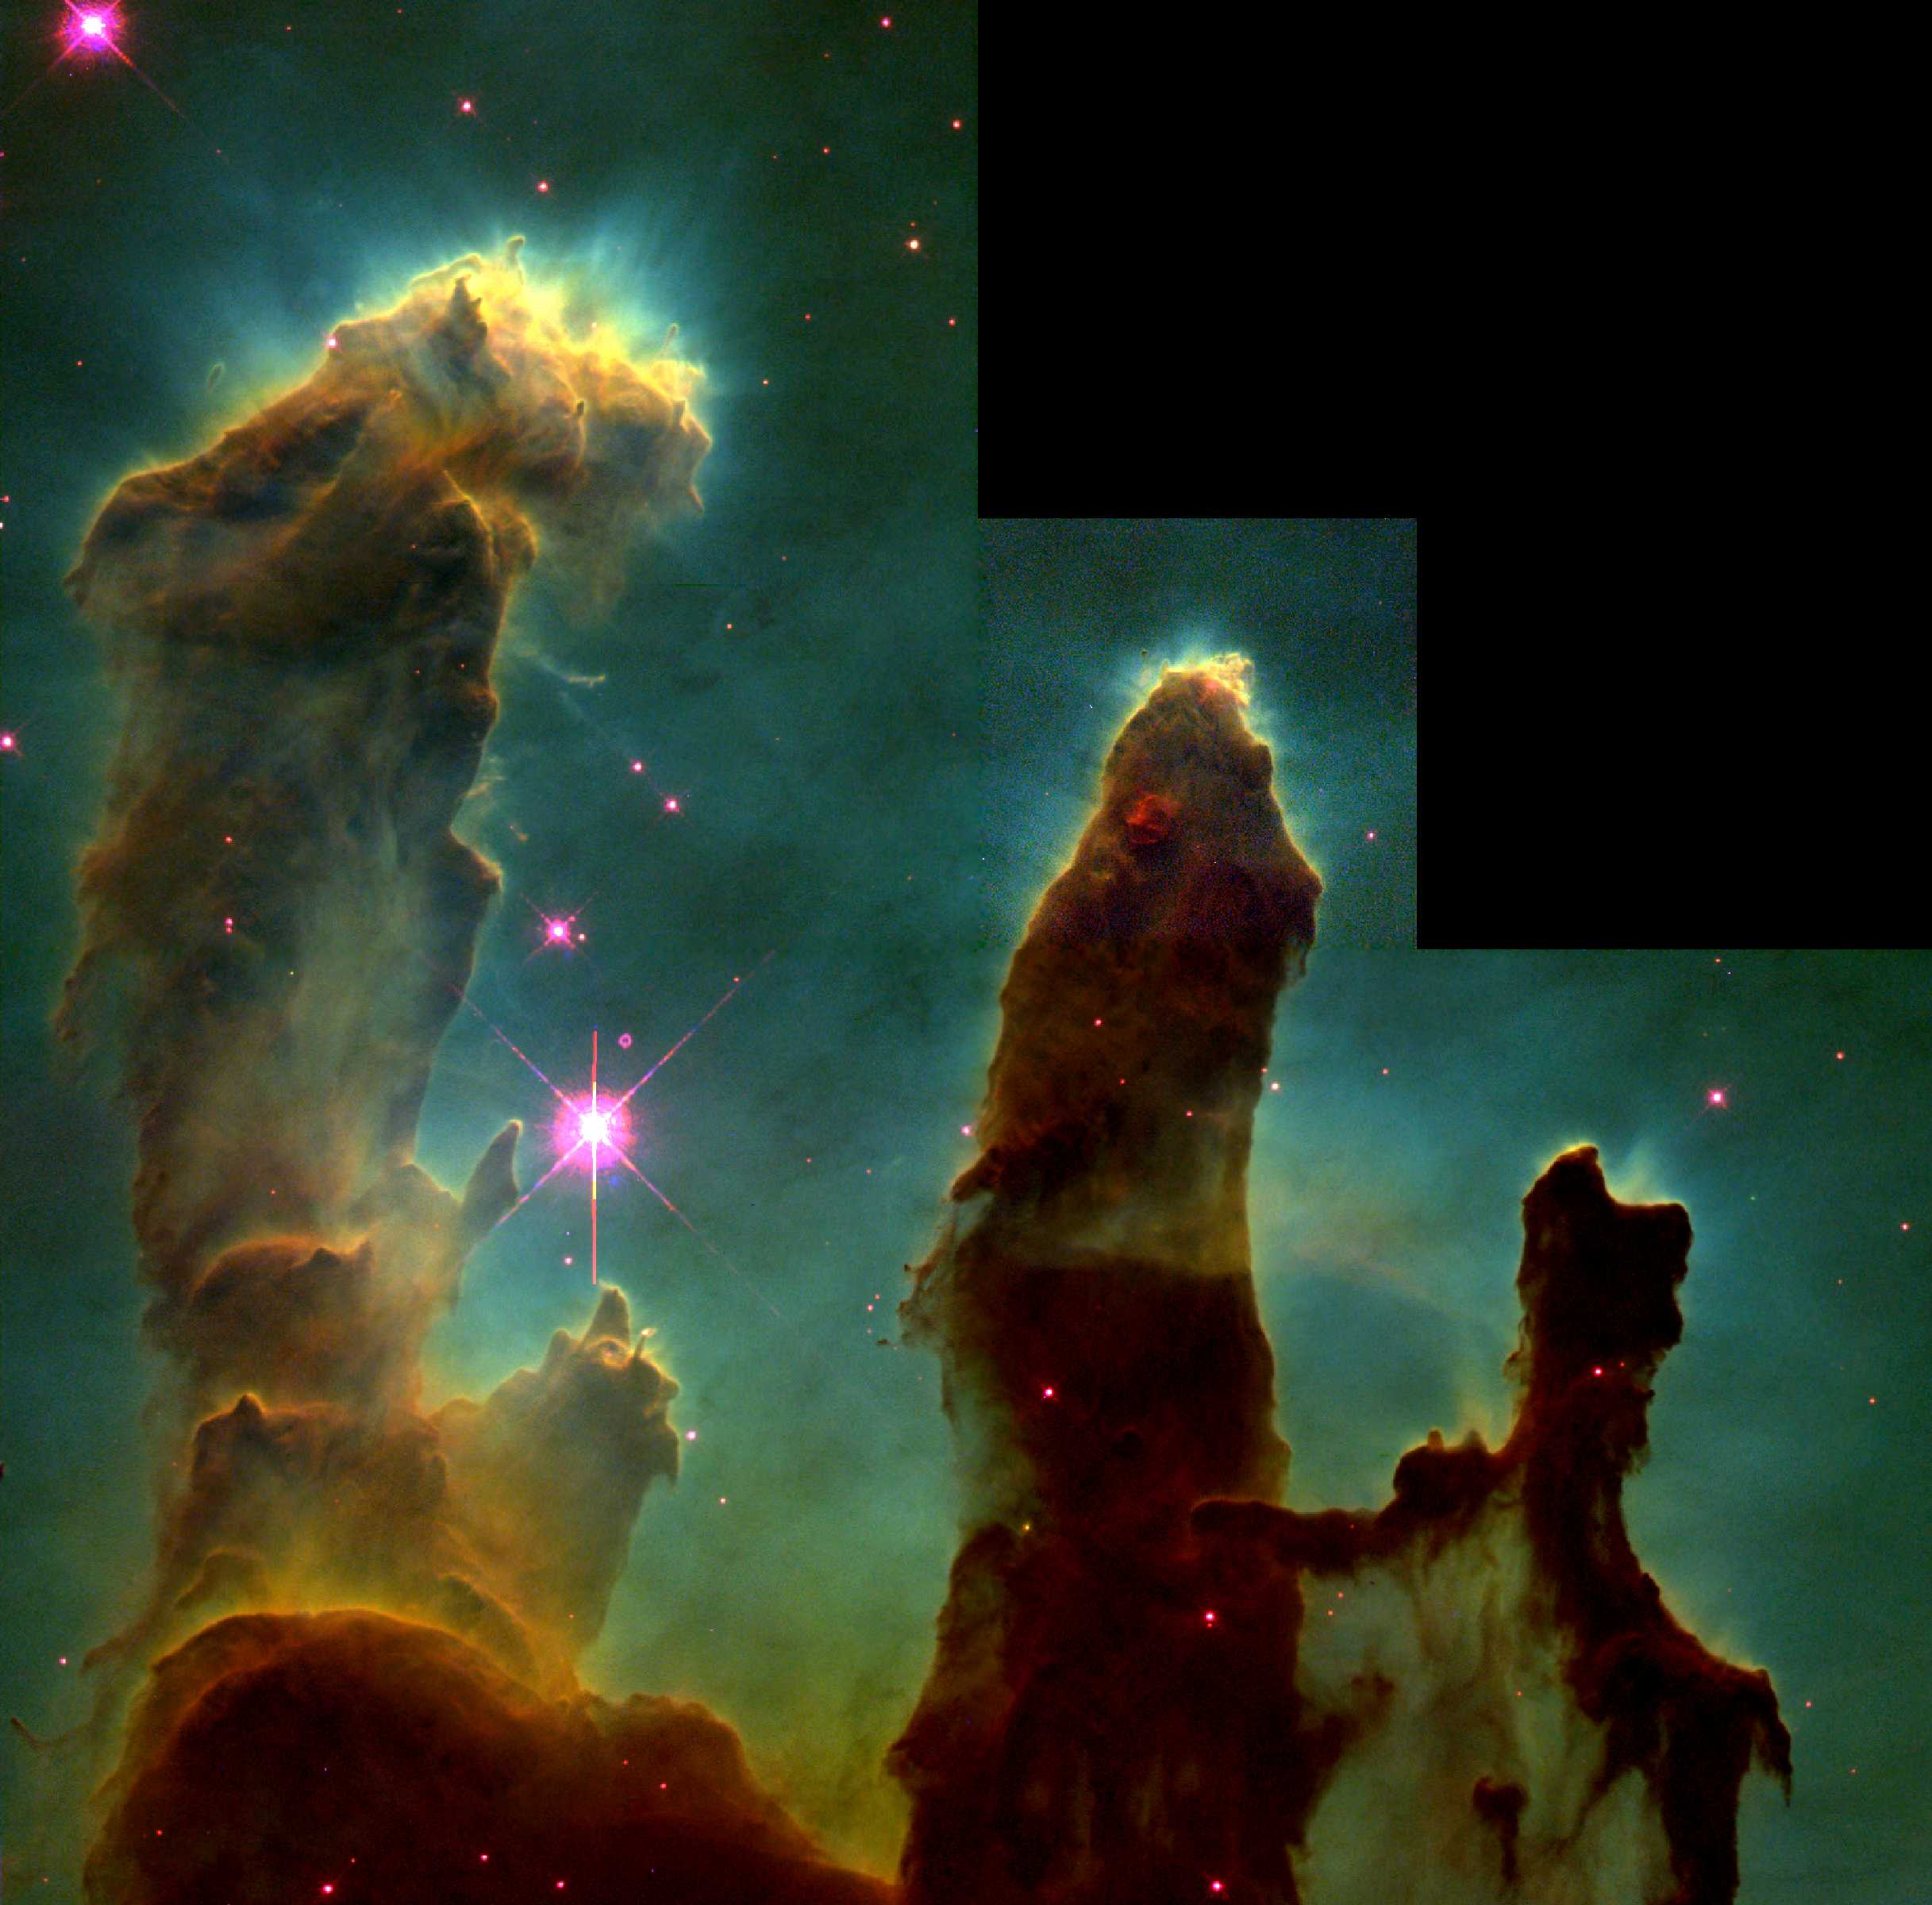 鹰星云内部的气体柱“创生之柱”，长度约一光年。顶部的云气正在蒸发，表示有新生的恒星正在发散恒星风，将物质吹散。